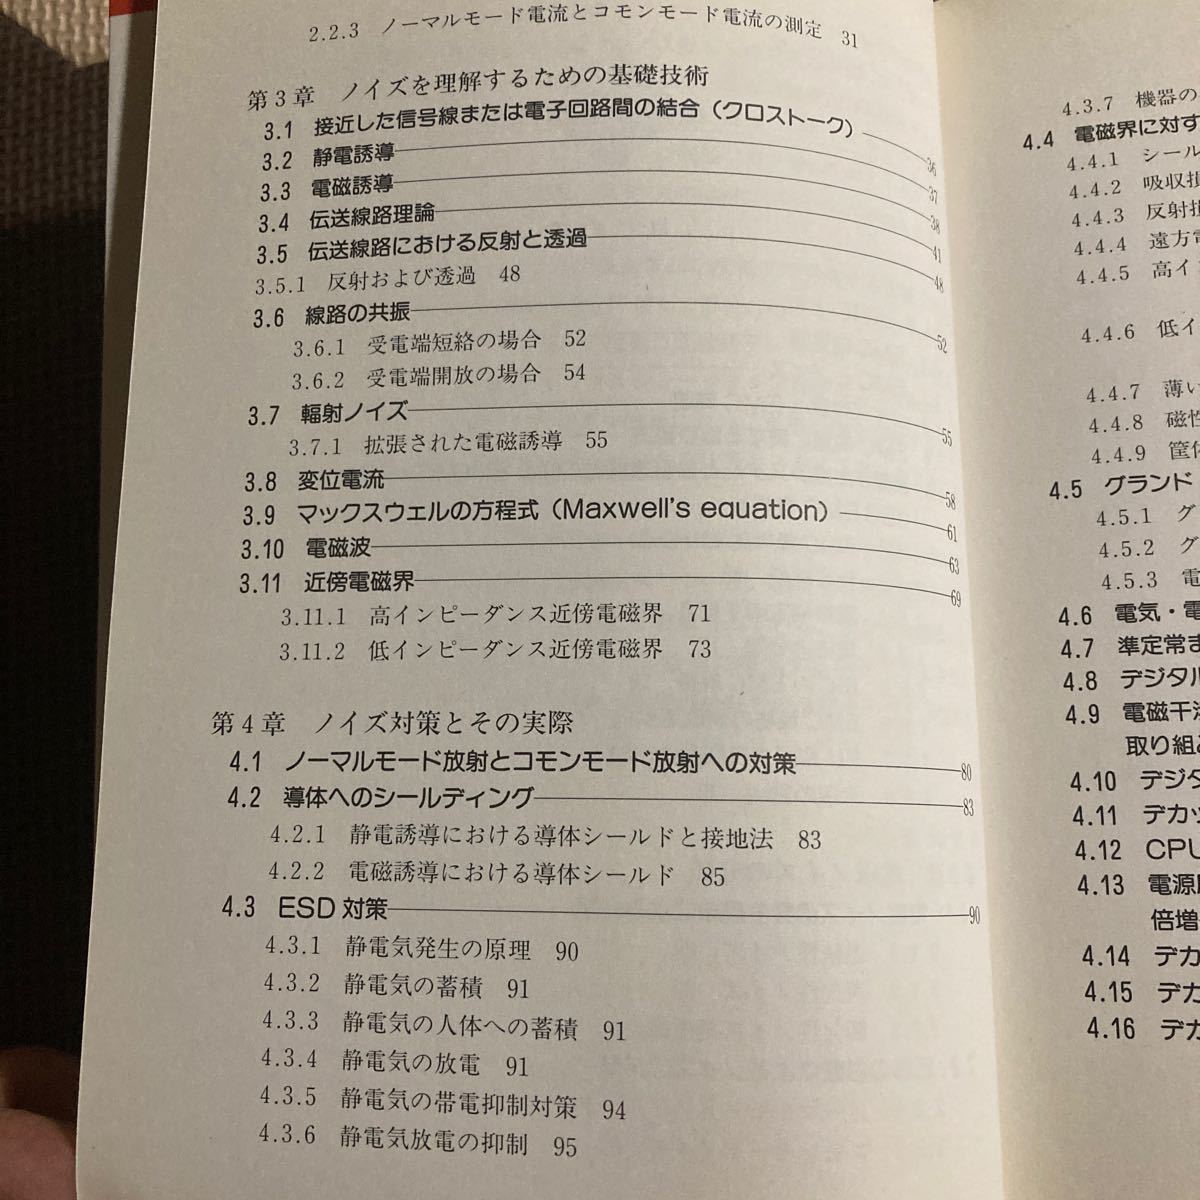 はじめてのノイズ対策技術 ビギナーズブックス４／遠矢弘知 (著者)